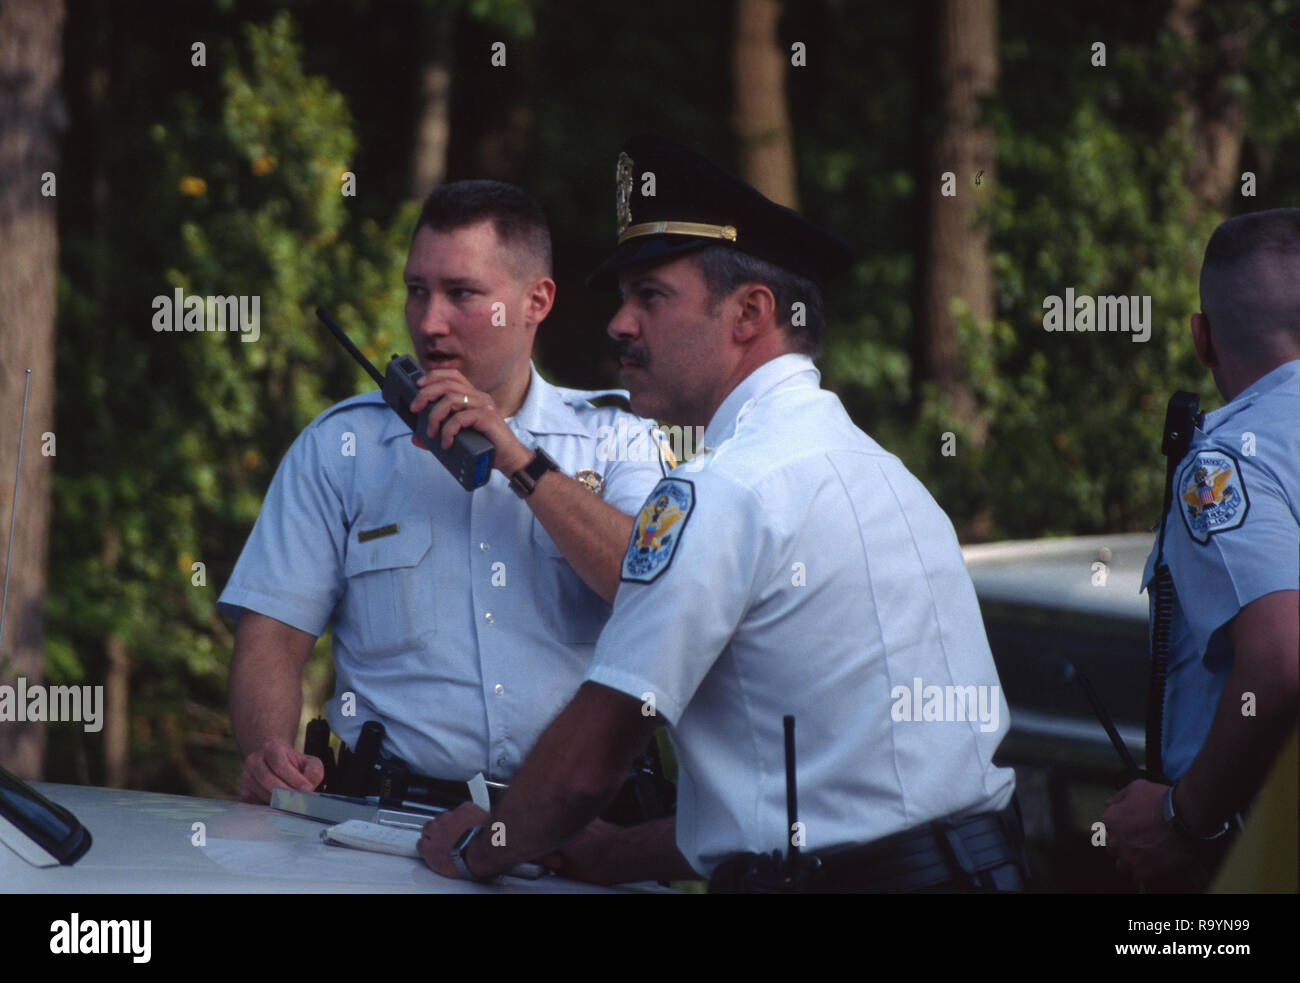 Dos policías uno hablando en la radio en la escena de una emergencia Foto de stock